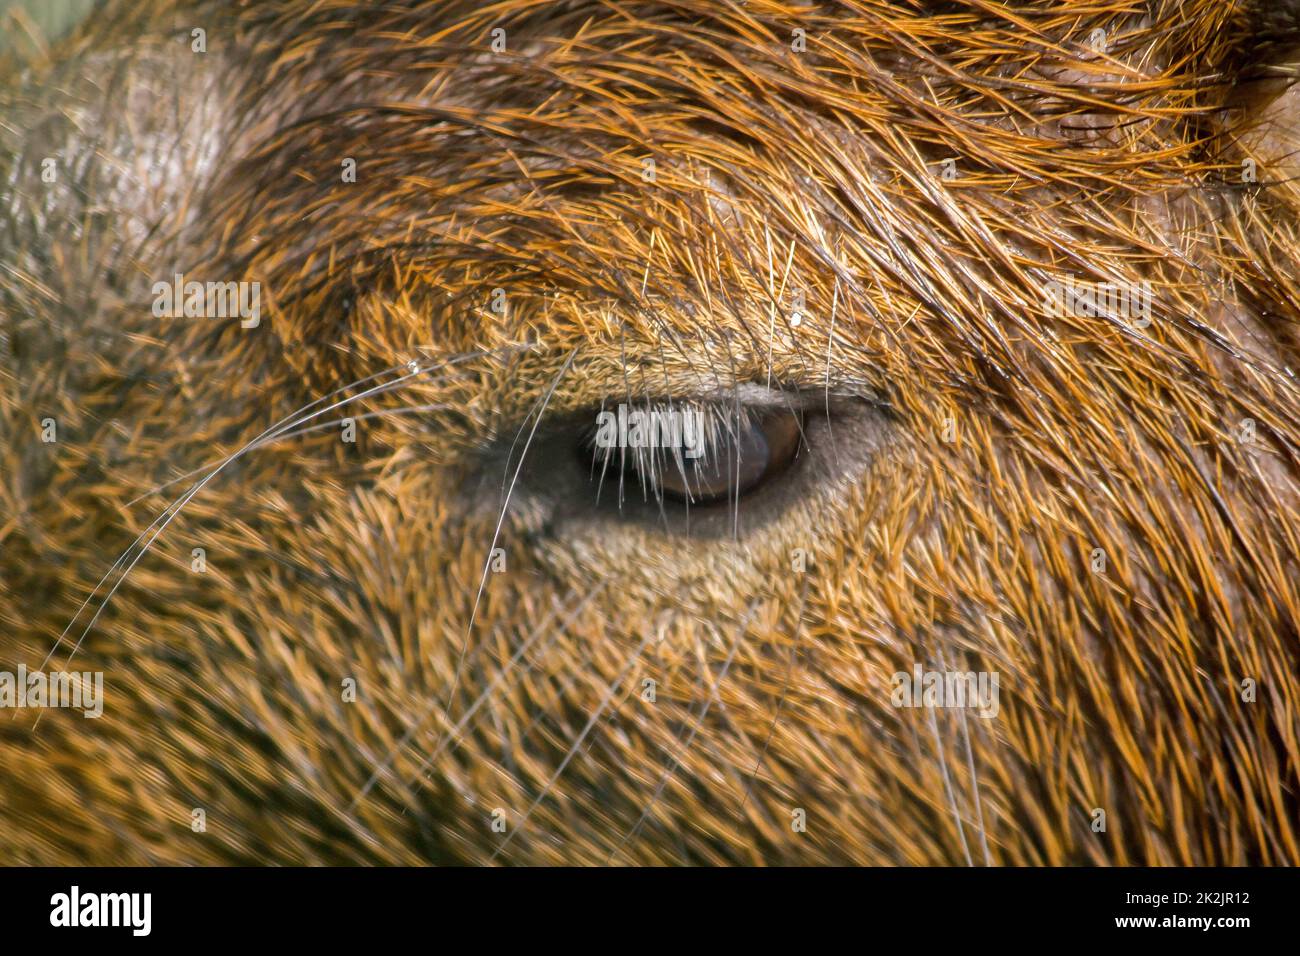 Los ojos de Capibara se cubren con pelo marrón que es la rata más grande del mundo nativa de América del Sur Foto de stock